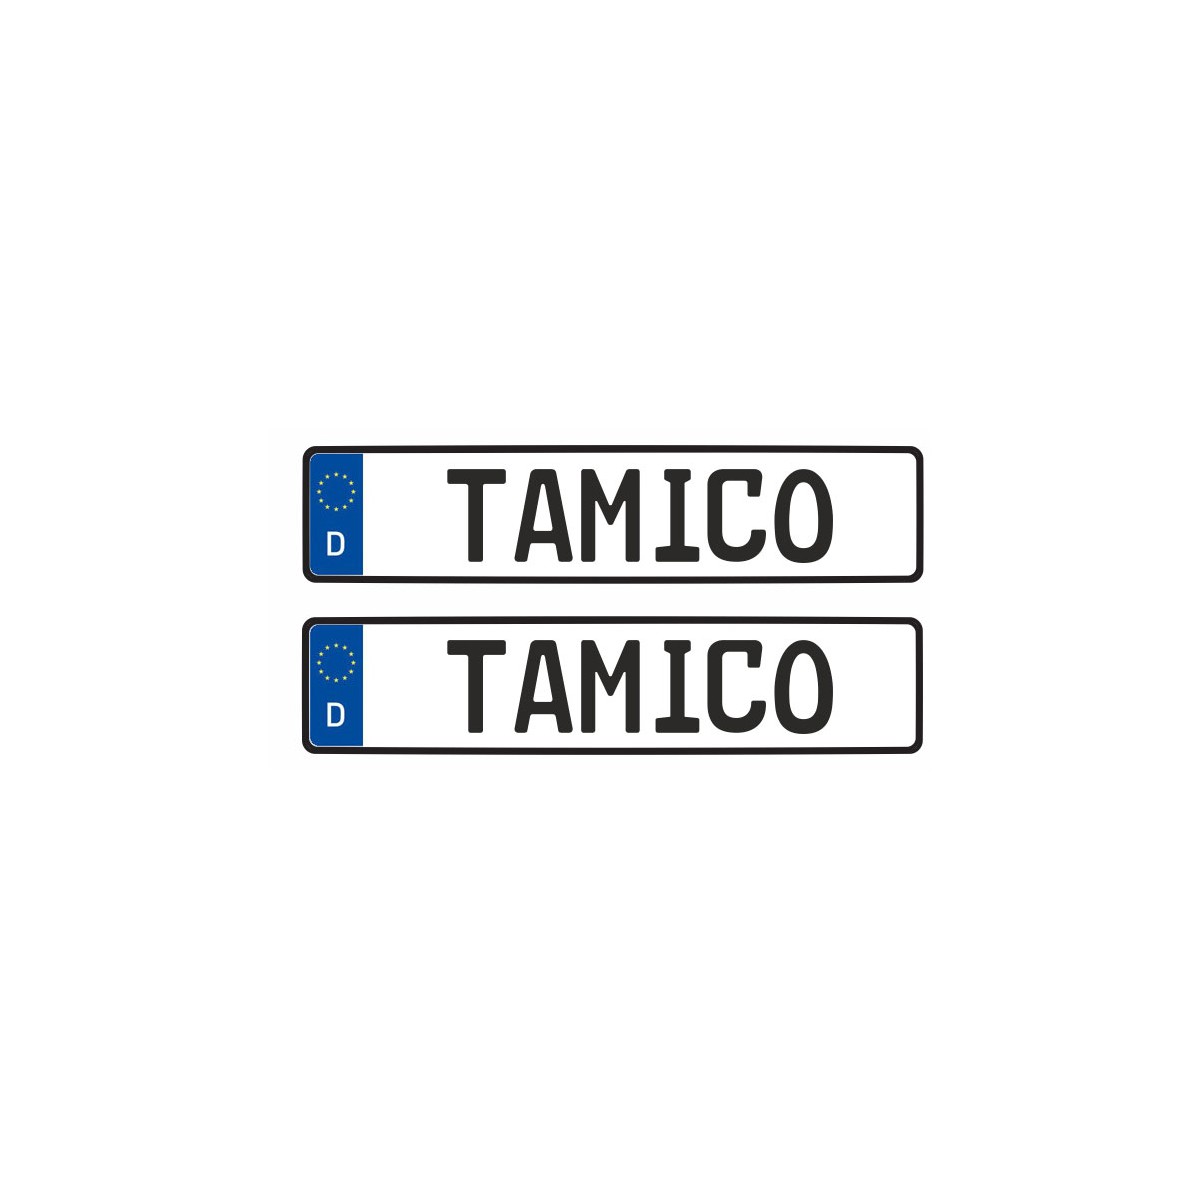 Tamico Kennzeichen TAMICO Deutschland EU 1:10 3D 2er Set